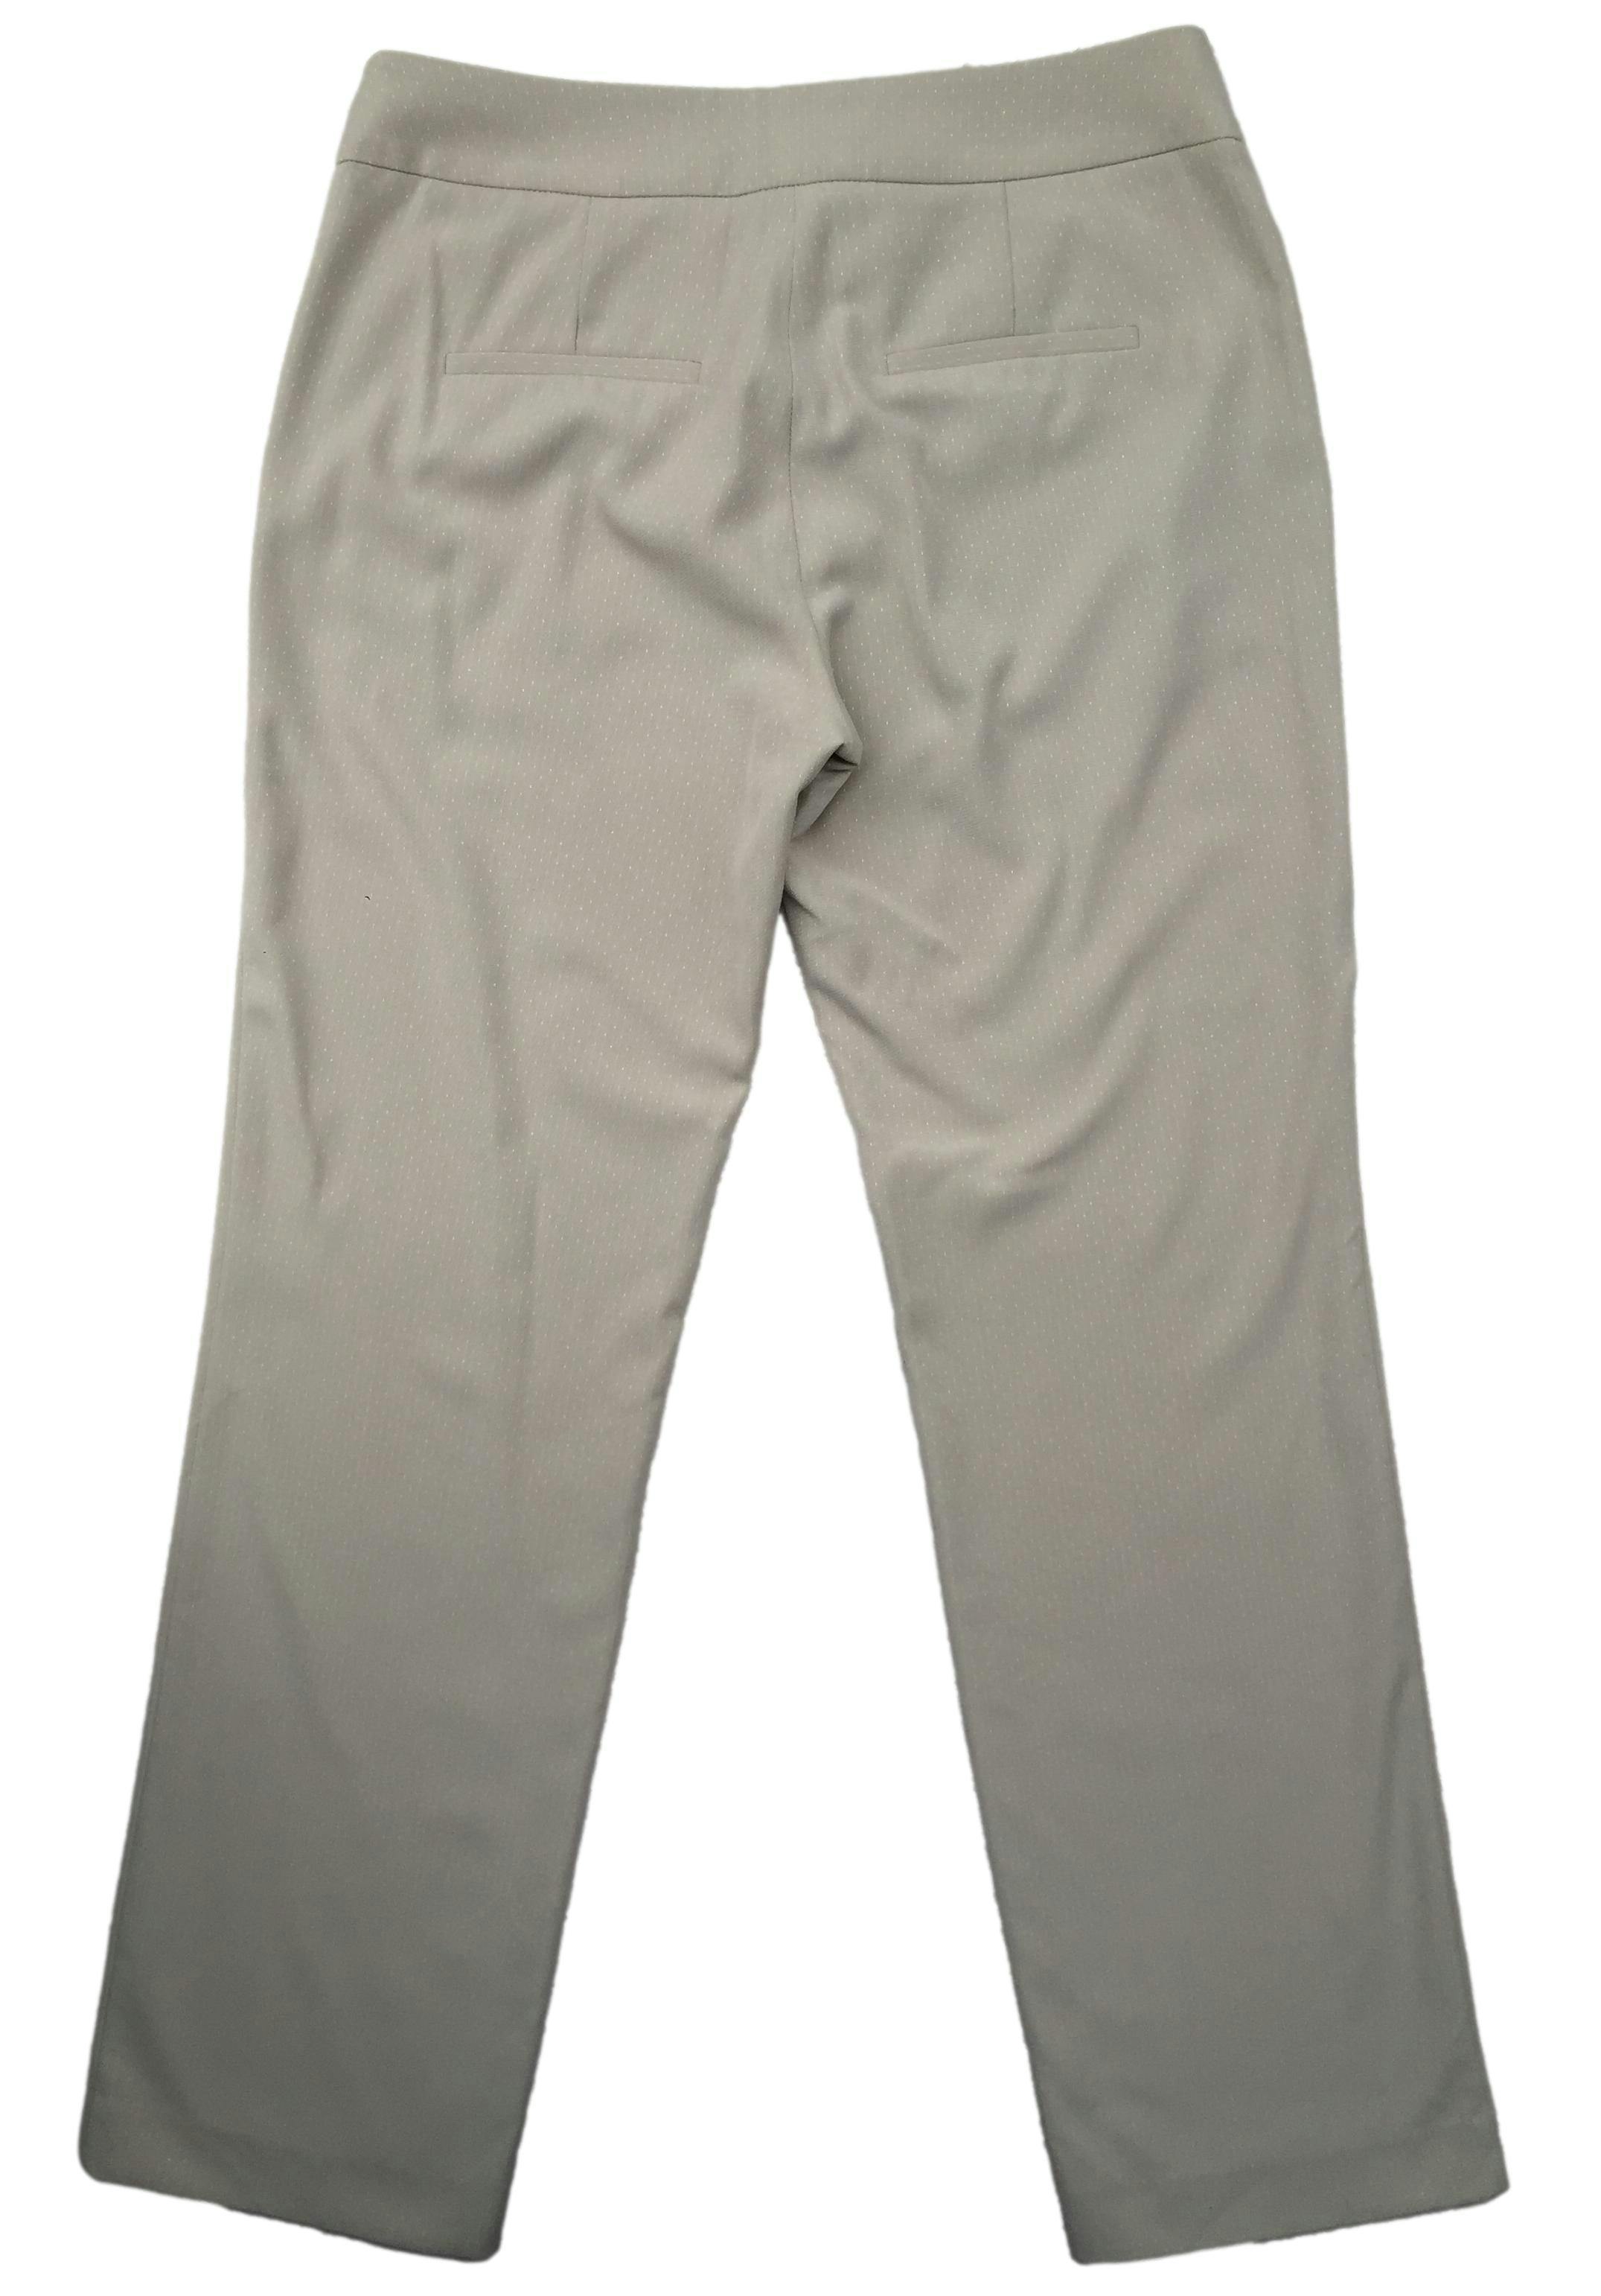 Pantalón Fina beige con detalles blancos, tiro medio, corte recto, bolsillos laterales. Cintura 80cm Largo 100cm